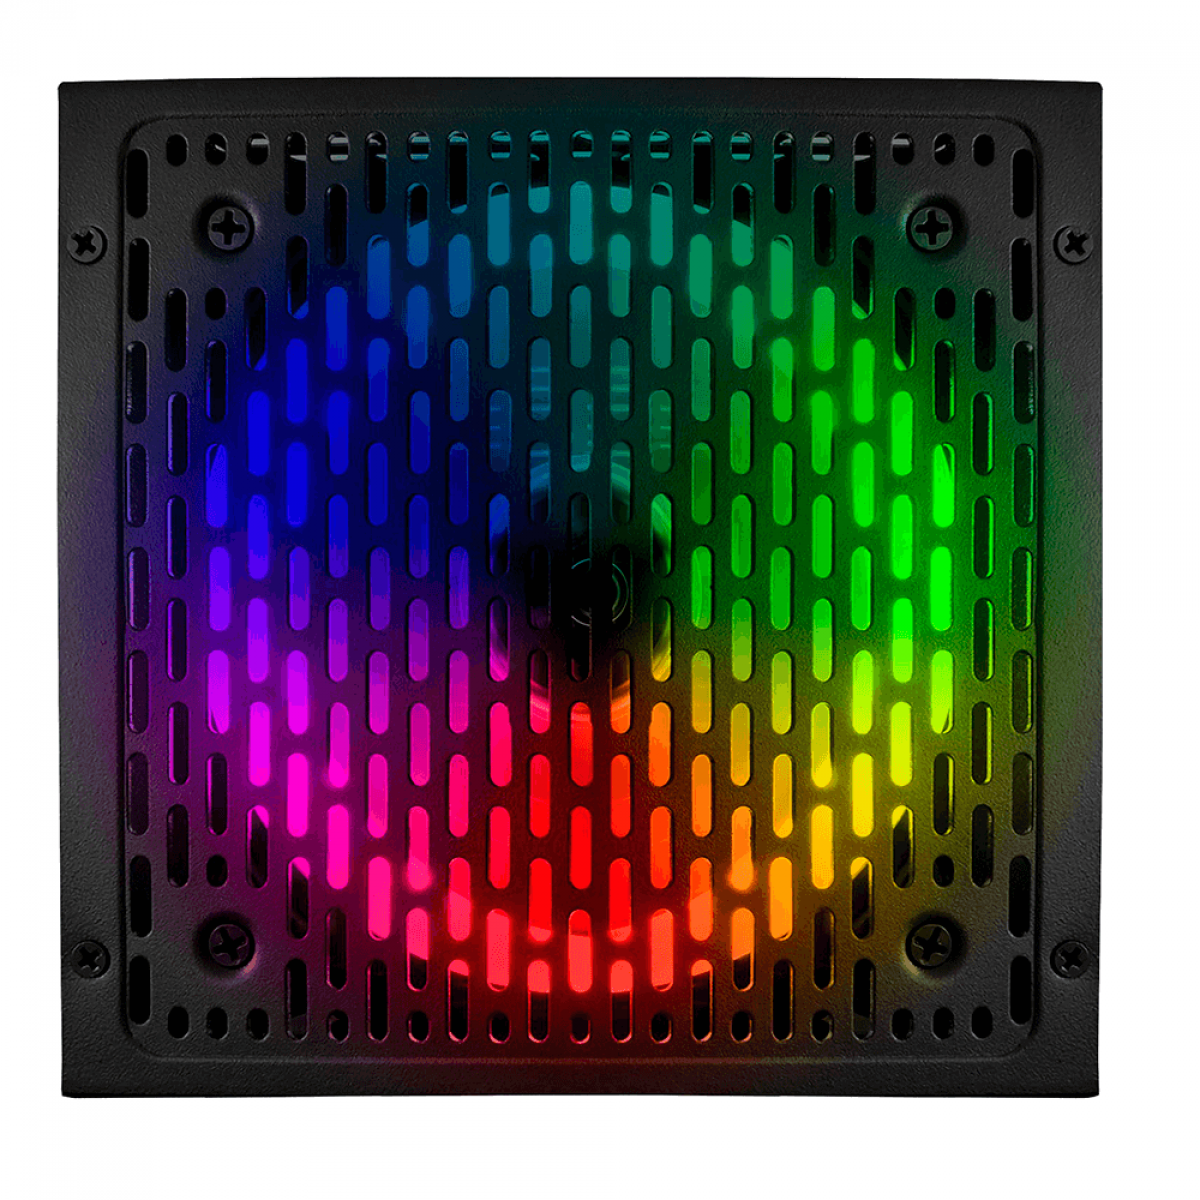 Fonte BRX Rainbow RGB, 450W, 80 Plus Bronze, PFC Ativo, RB450W